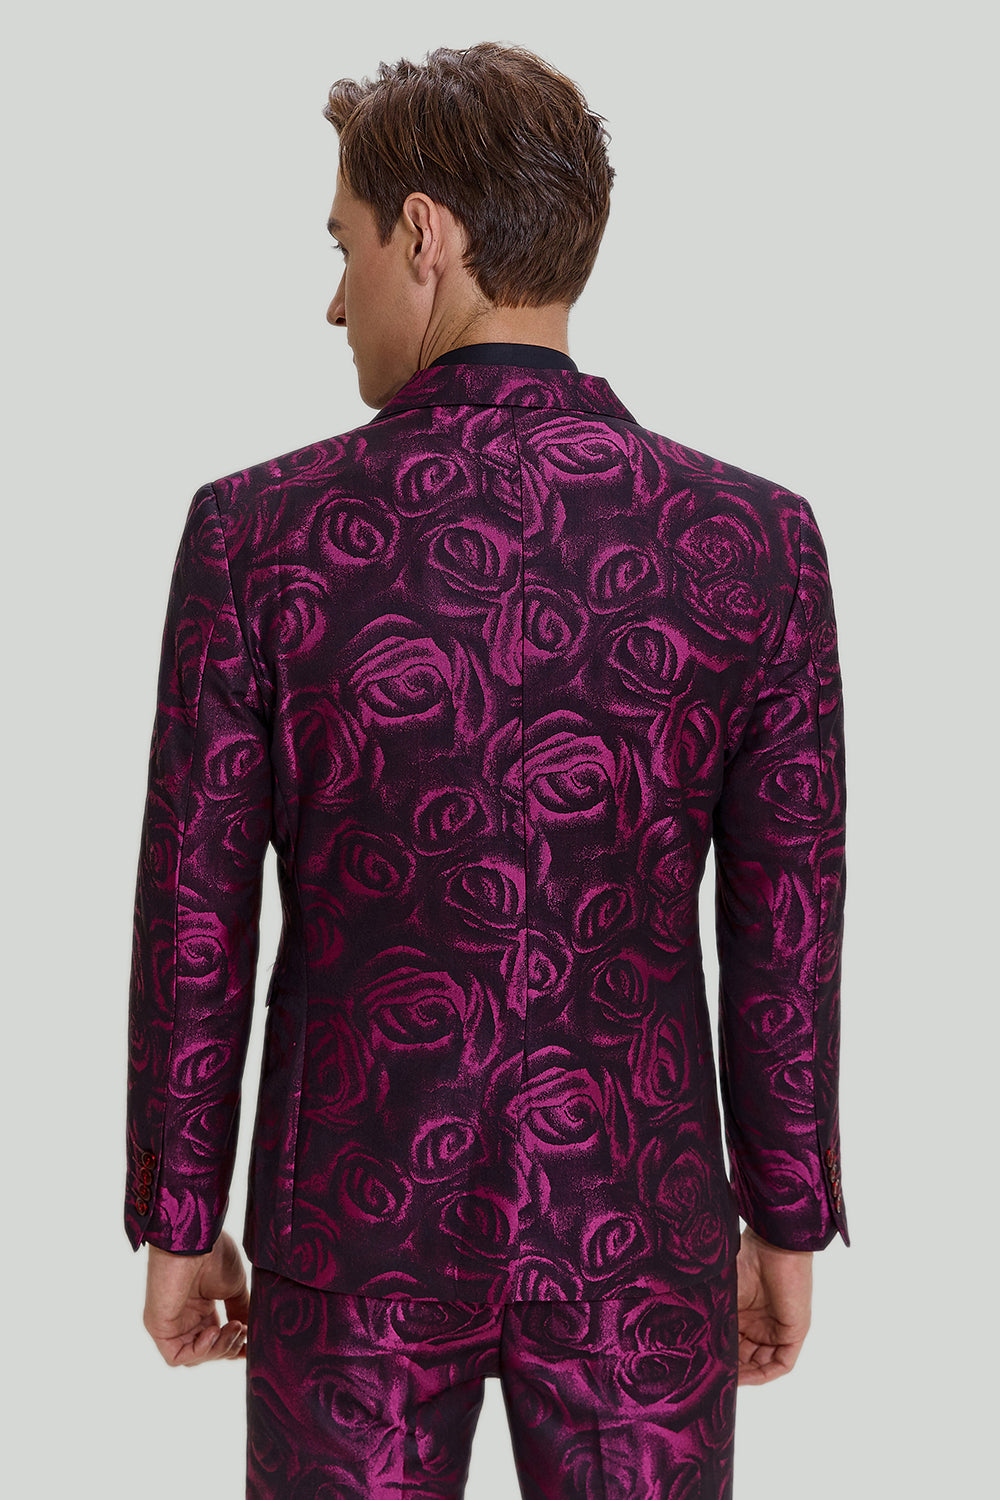 3 Piece Floral Pattern Men Suit| Alibaba.com